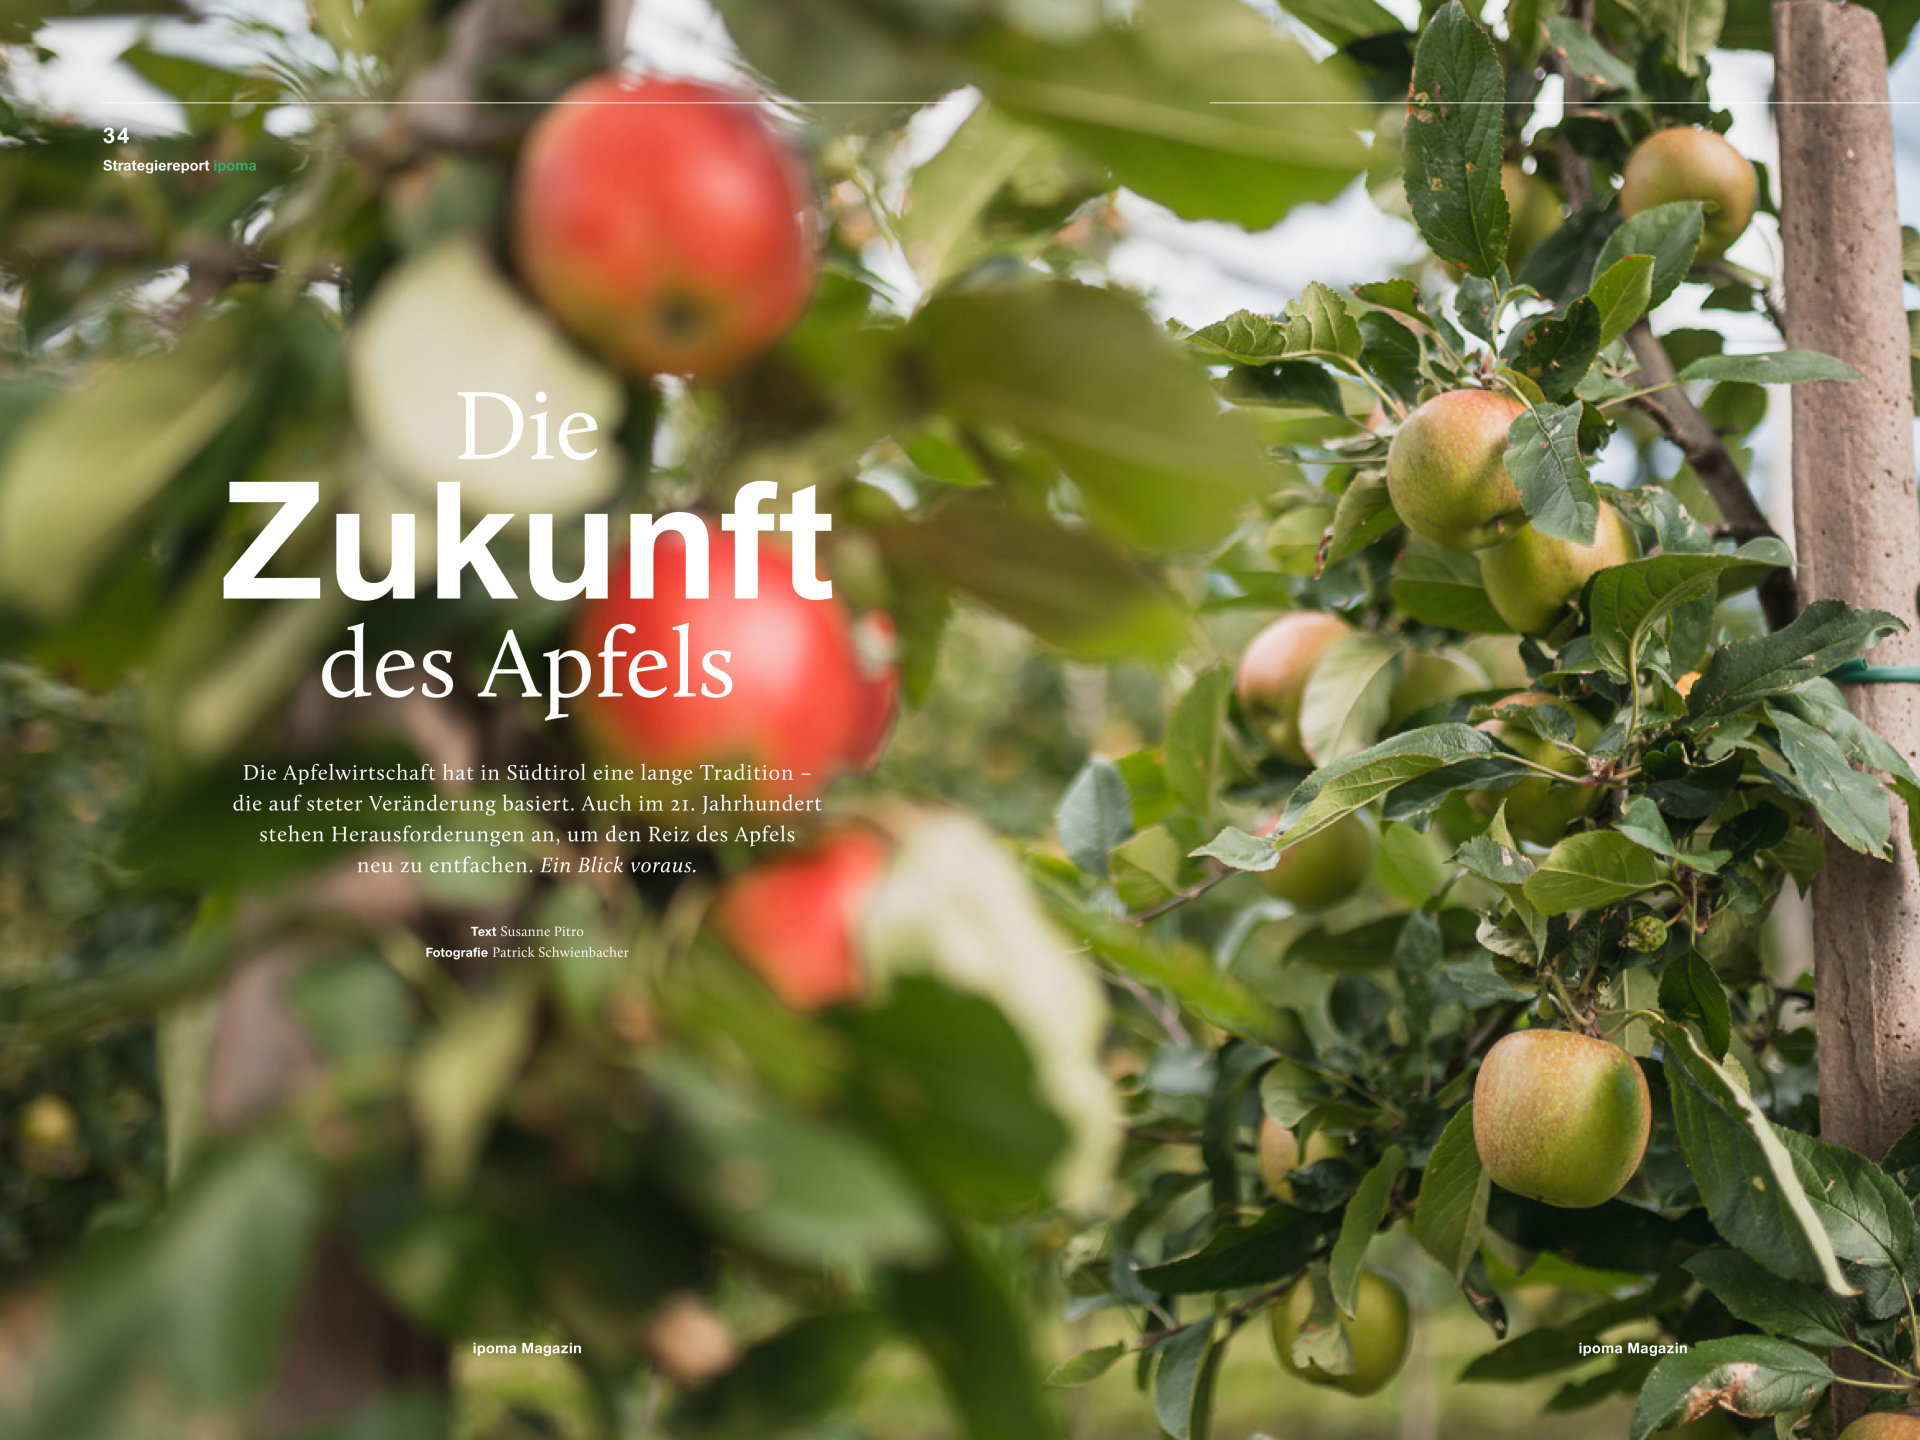 Die Zukunft des Apfels